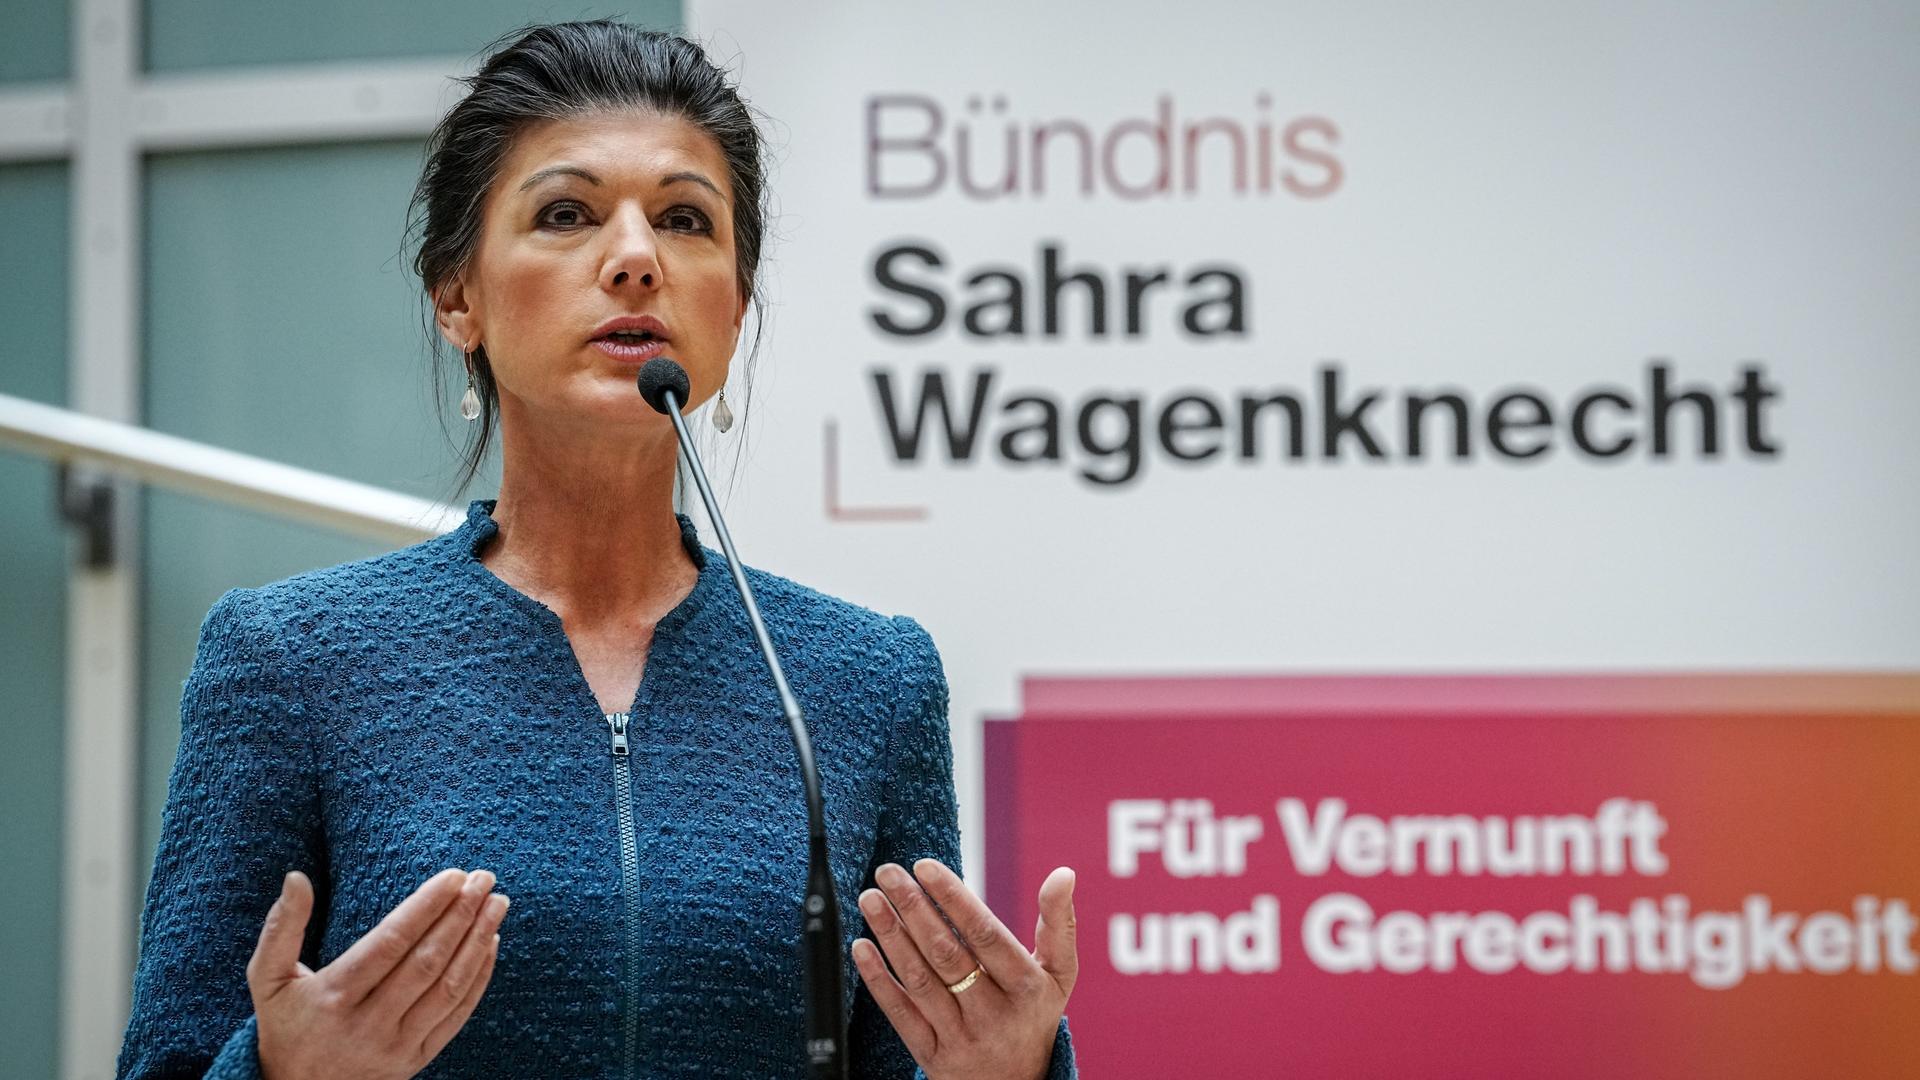 Berlin: Sahra Wagenknecht, Bundestagsabgeordnete, spricht anlässlich der Konstituierung der Gruppe "Bündnis Sahra Wagenknecht - Für Vernunft und Gerechtigkeit" auf einer Pressekonferenz.